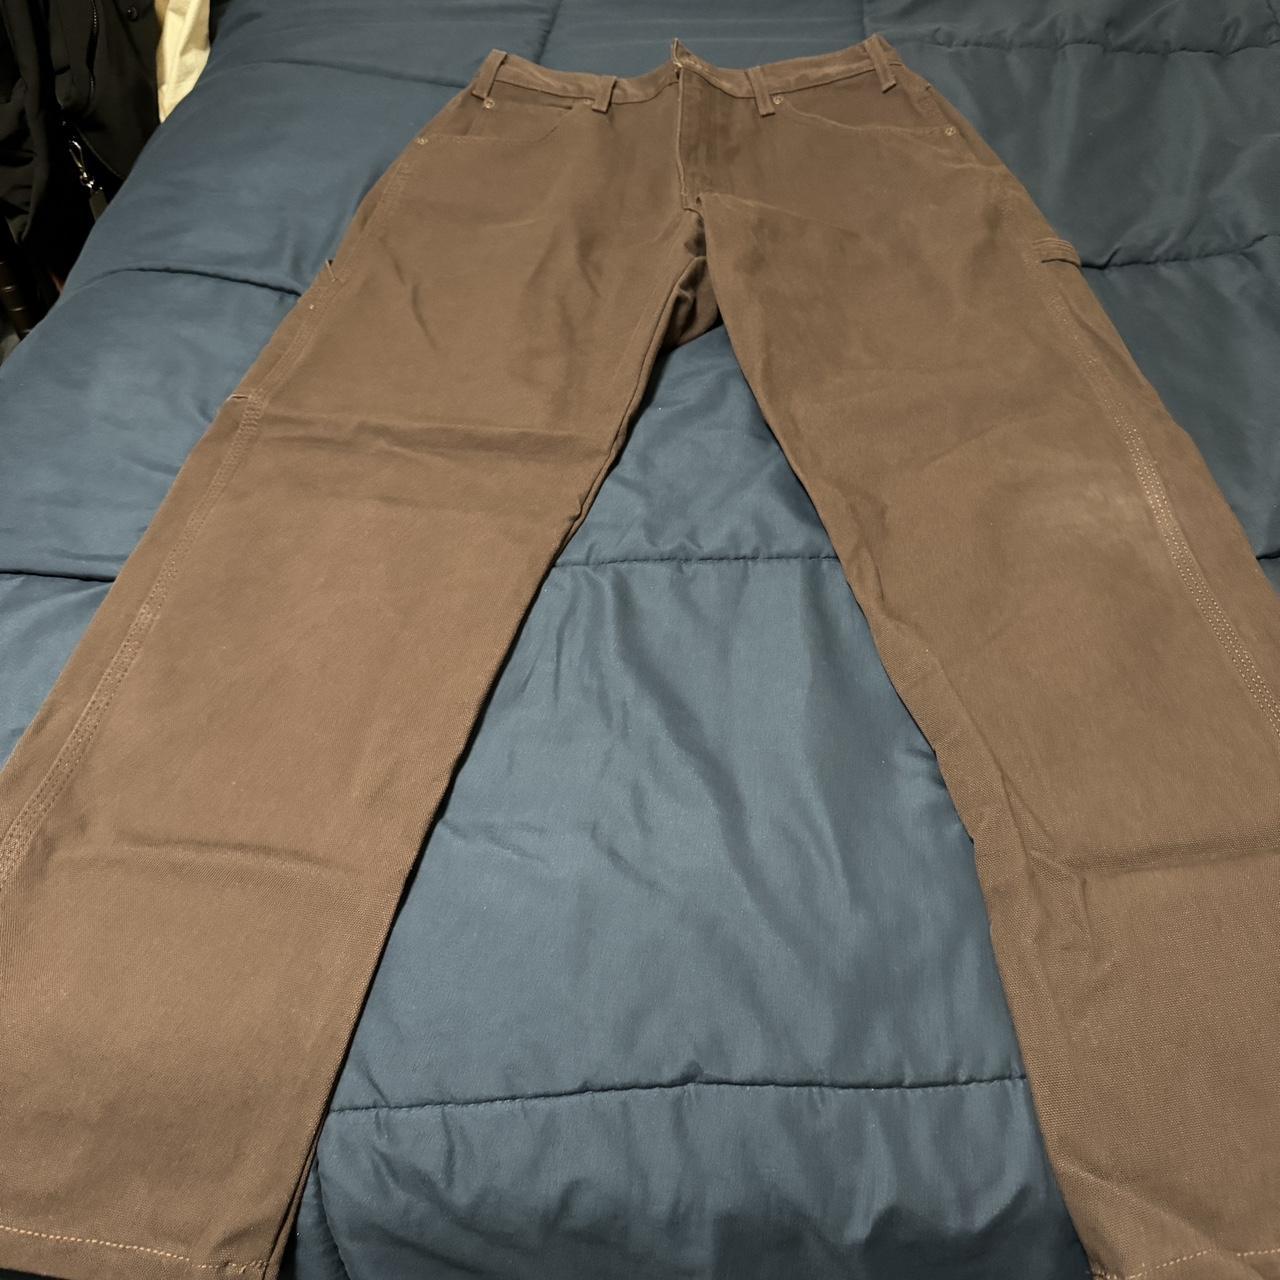 Dickie tailored cargo pants in coffee brown!... - Depop